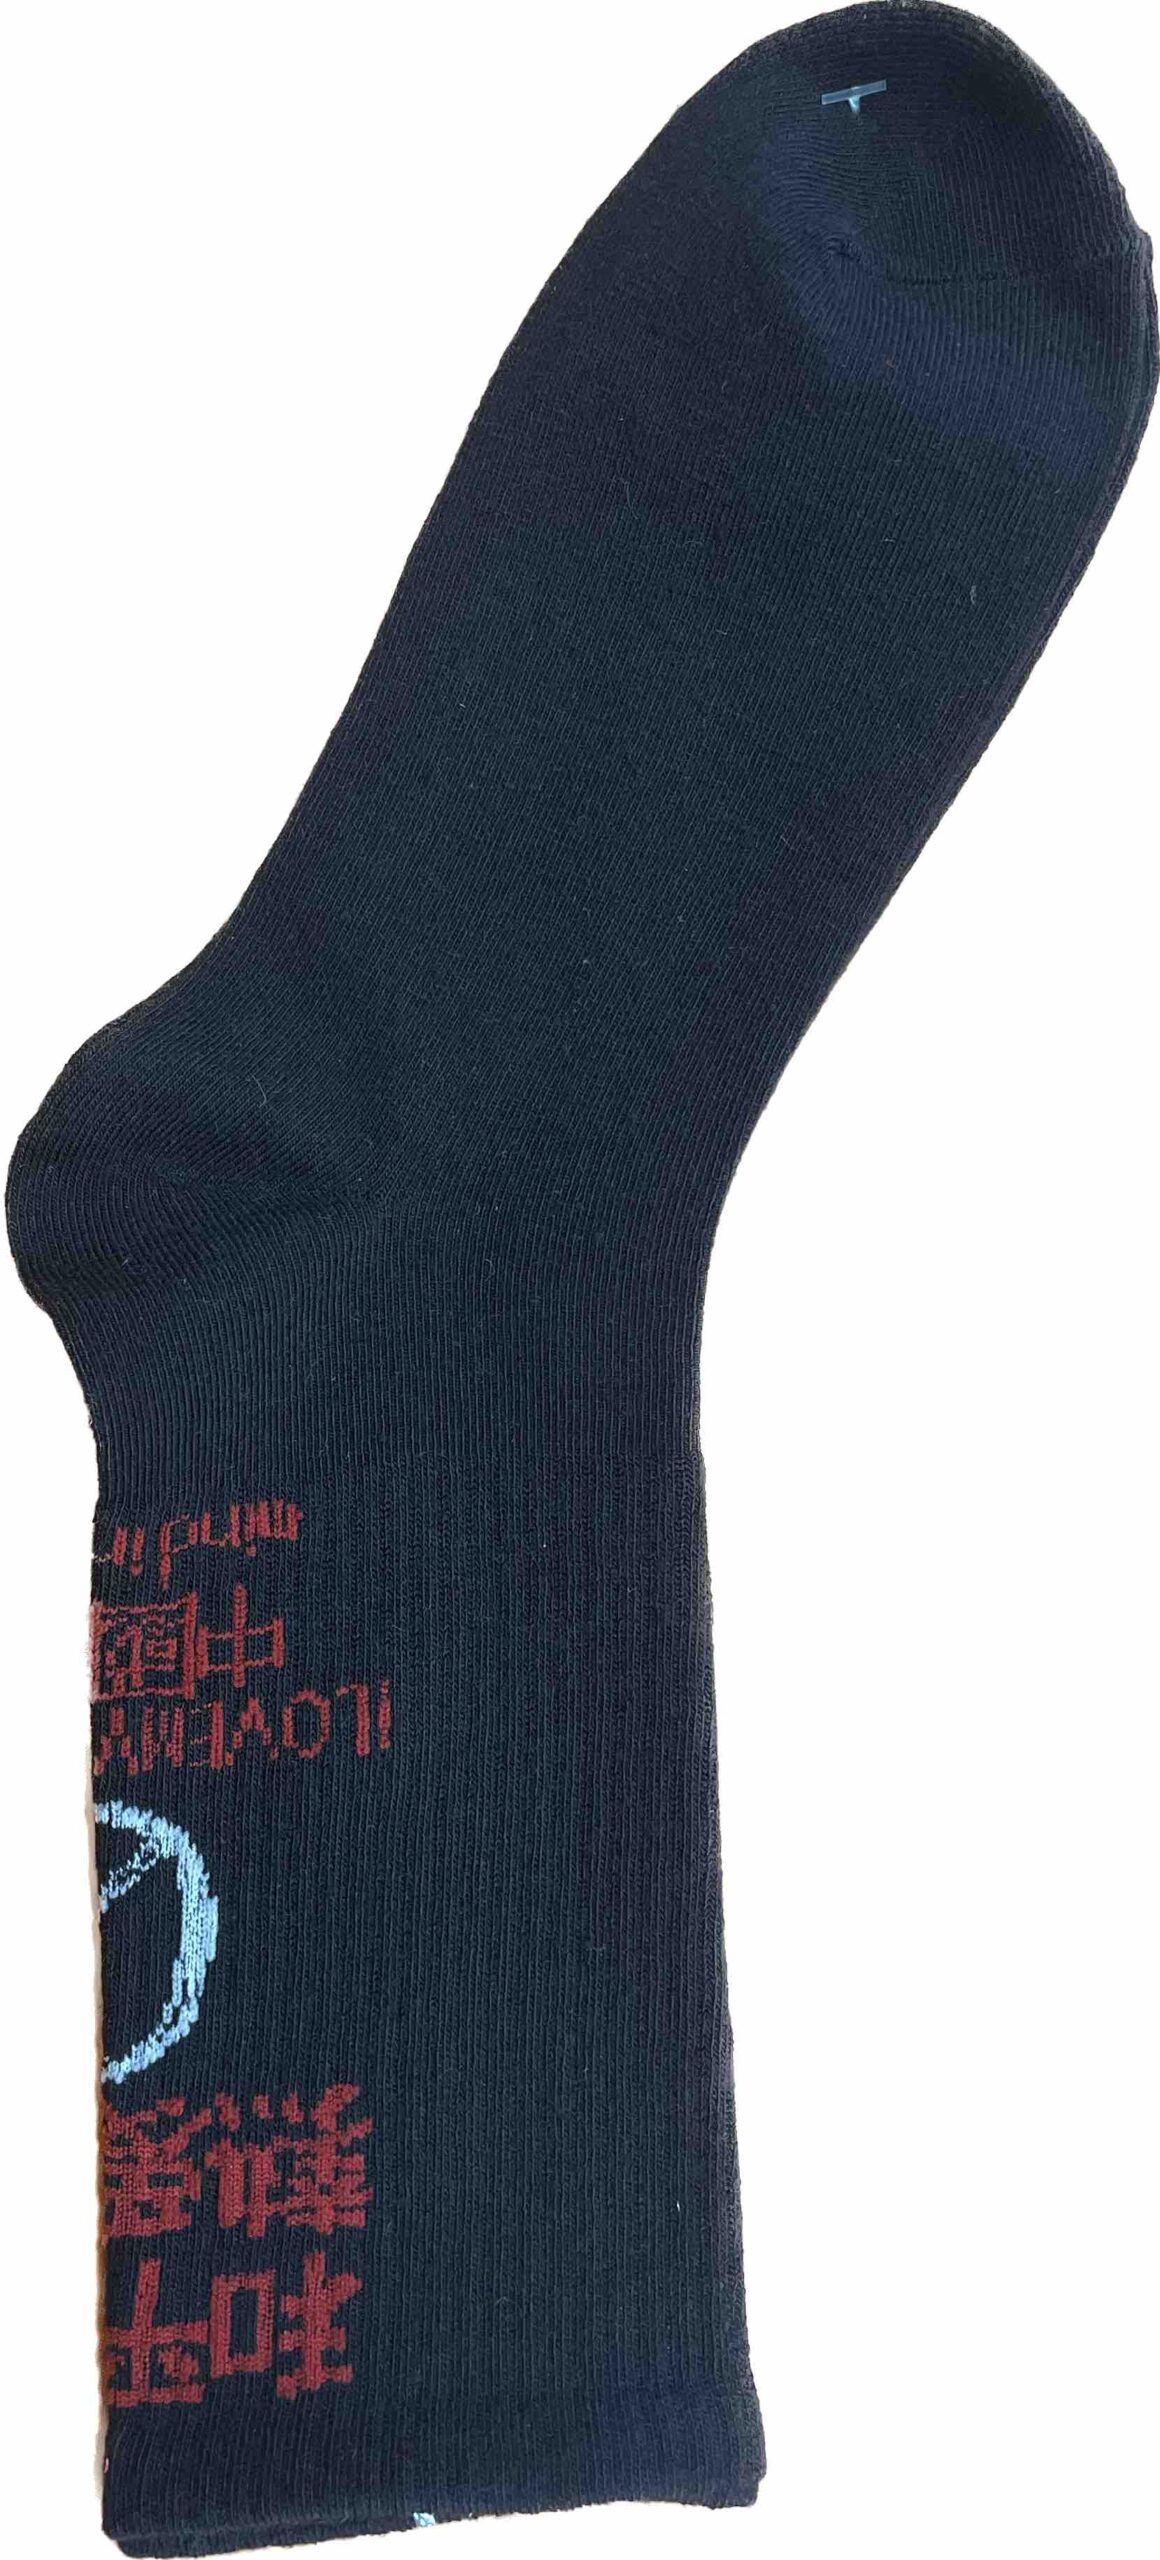 Κάλτσες σε χρώμα μαύρο 95 % βαμβάκι 5 % ελαστινη μέγεθος 40-46 no E1116